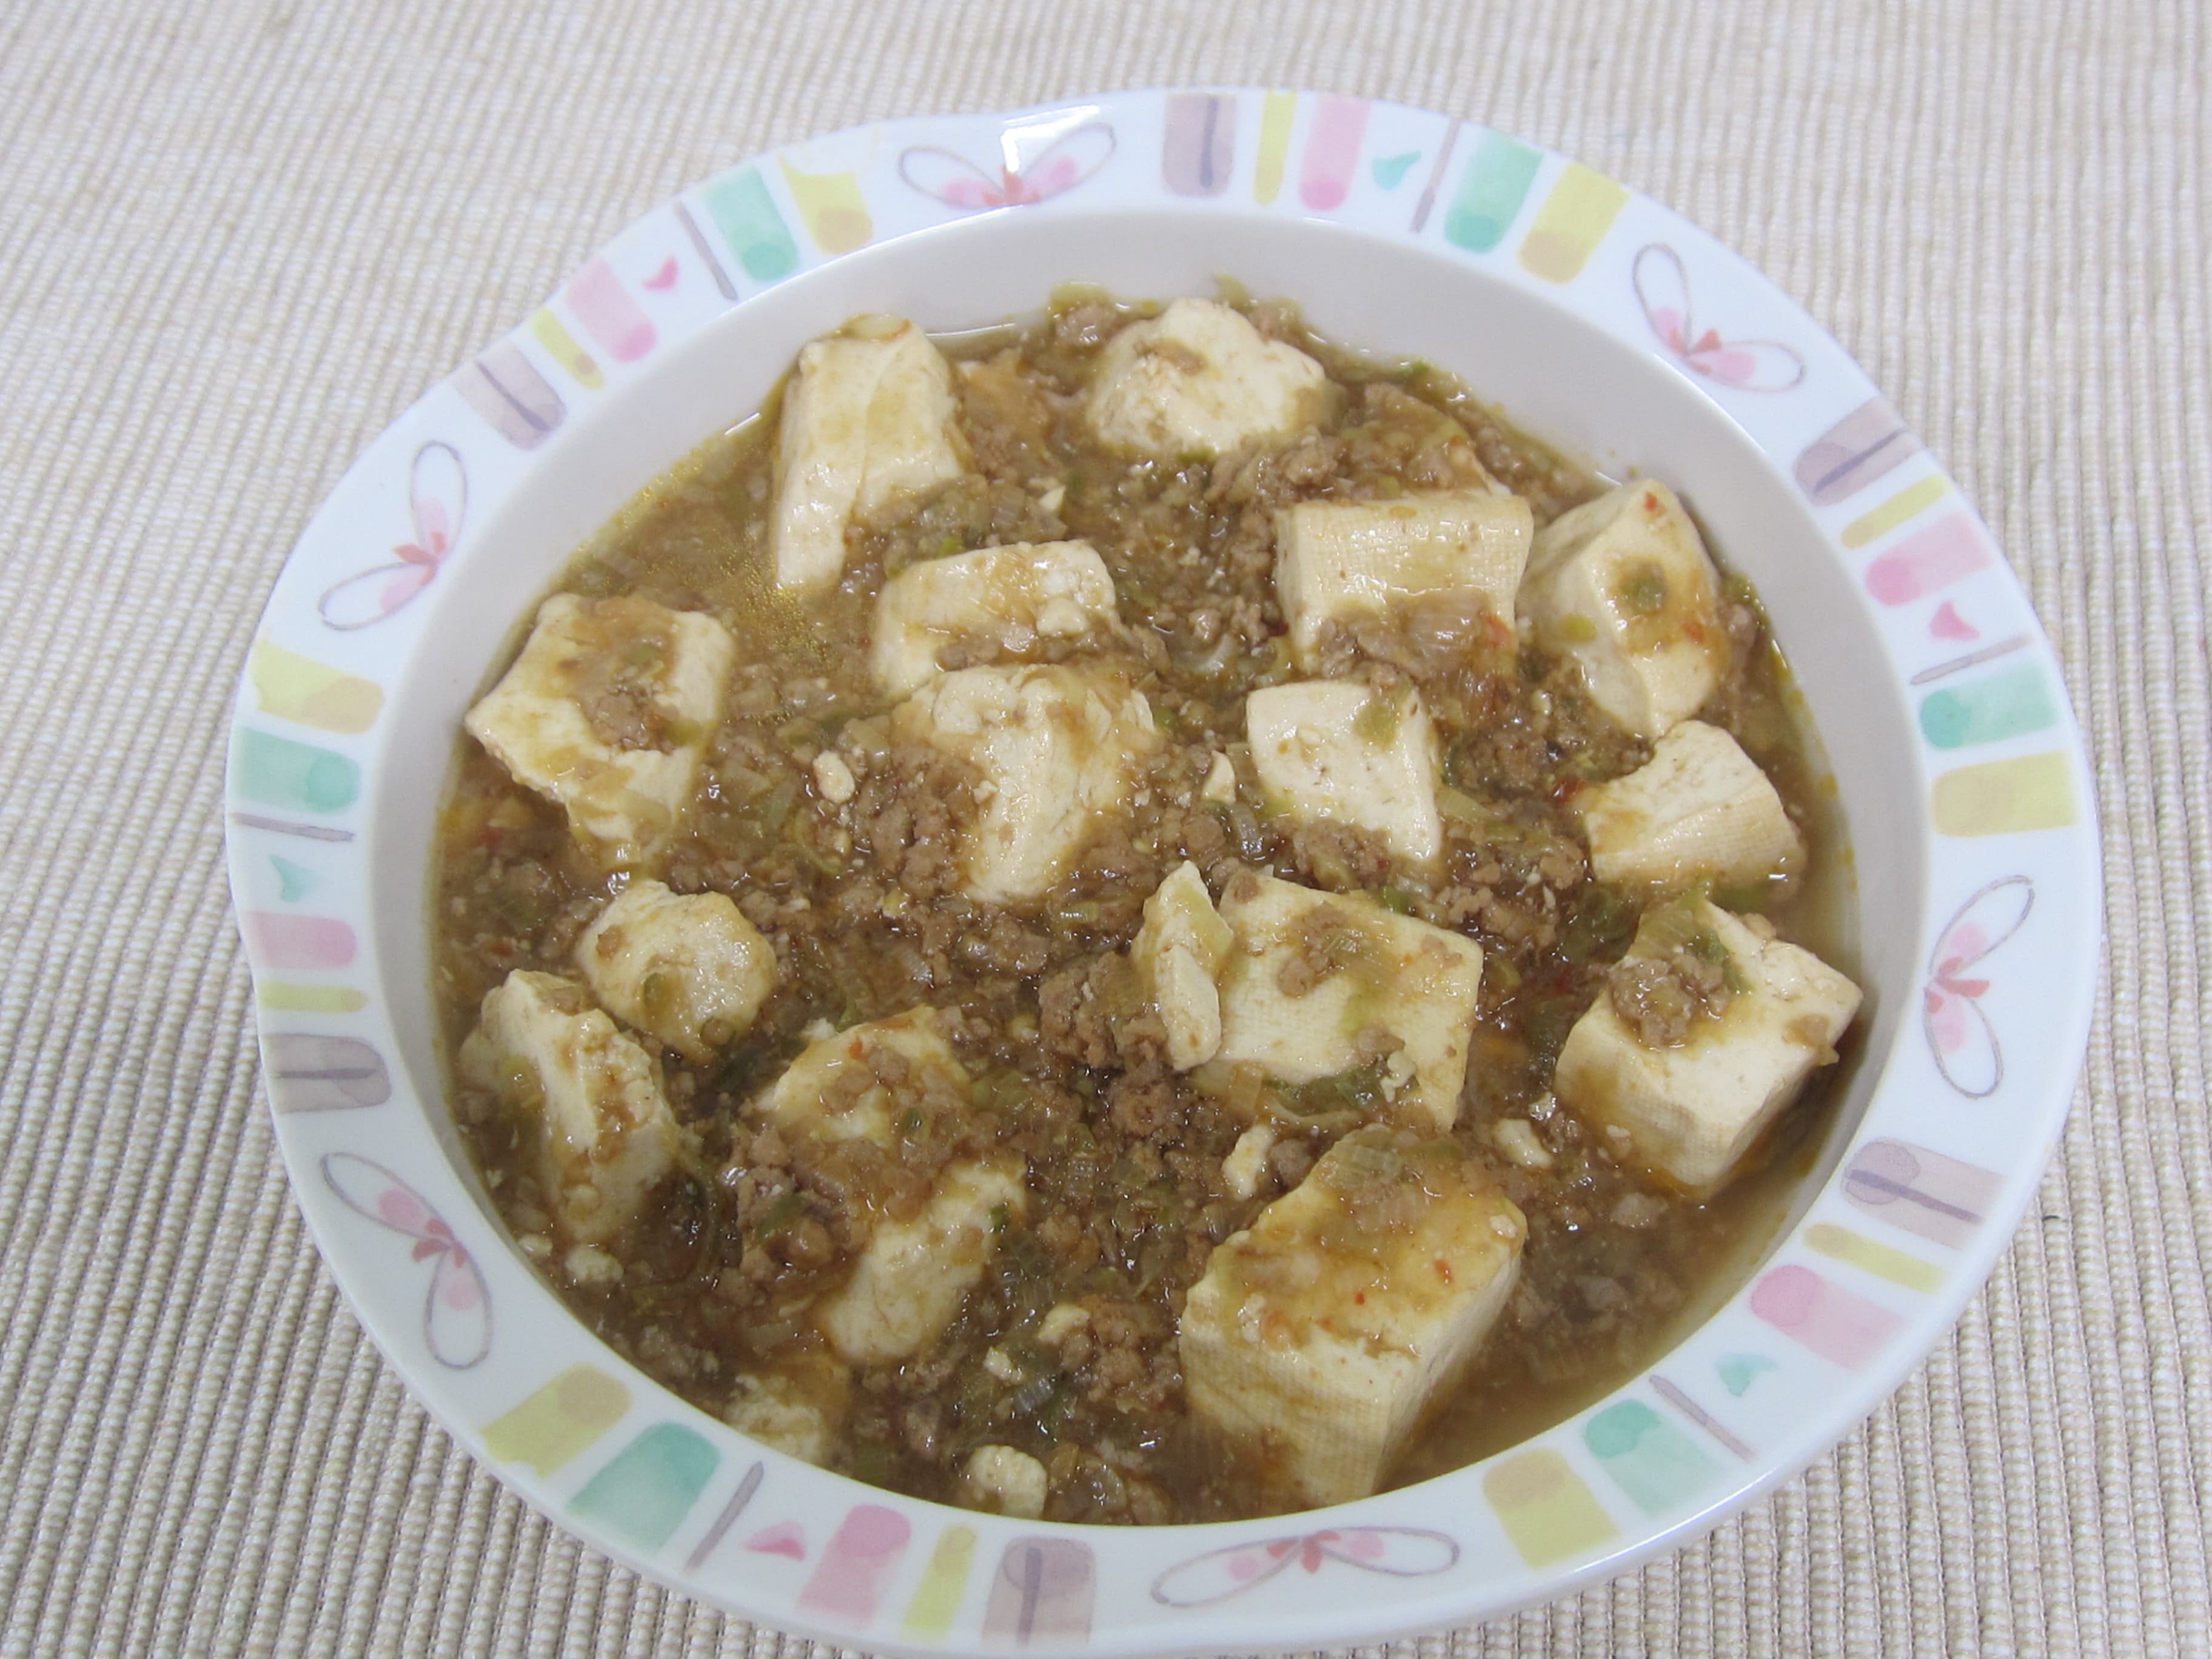 マーボー豆腐の写真